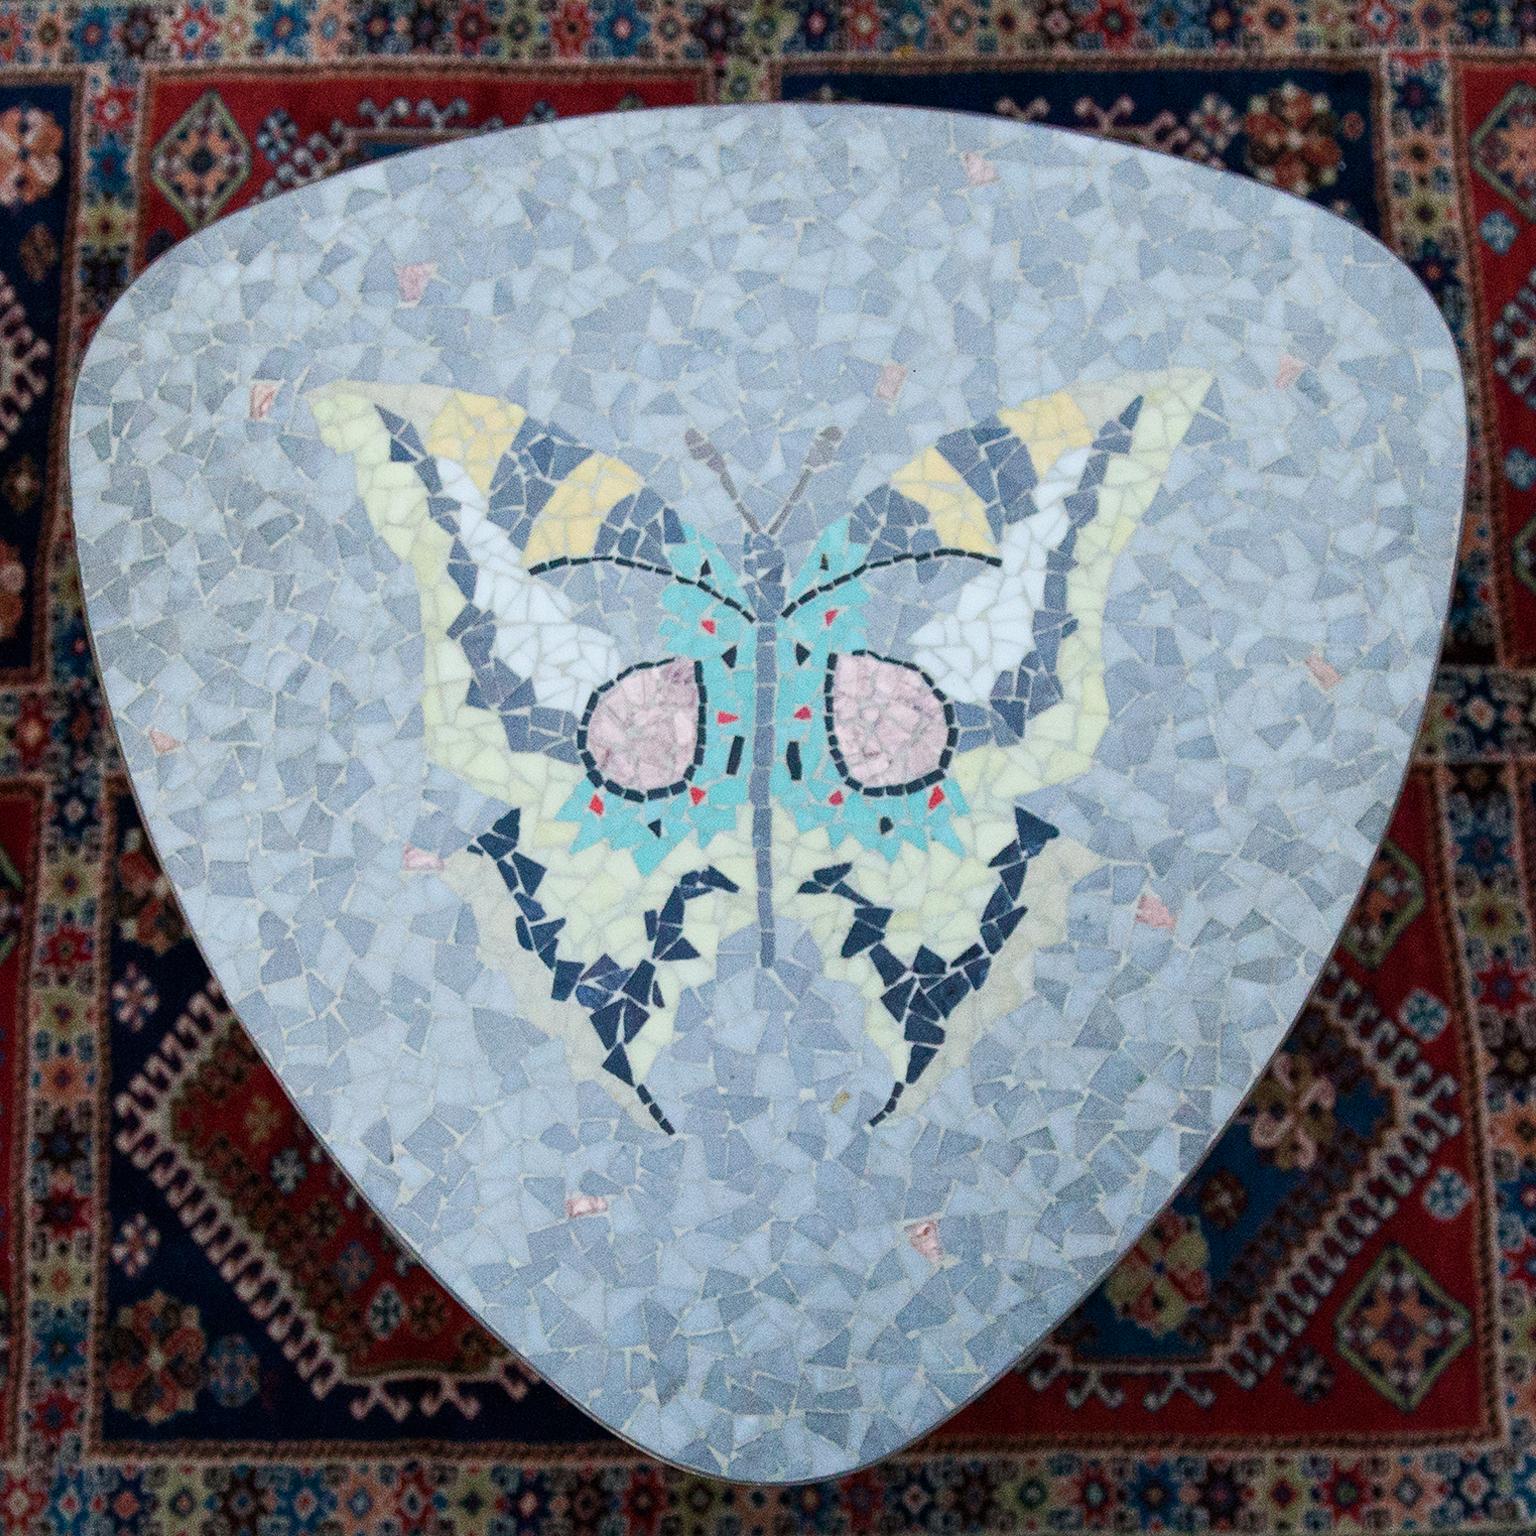 Magnifique table italienne en mosaïque conçue avec un beau papillon coloré en carreaux de verre sur un plateau triangulaire et avec des pieds en laiton massif.
 